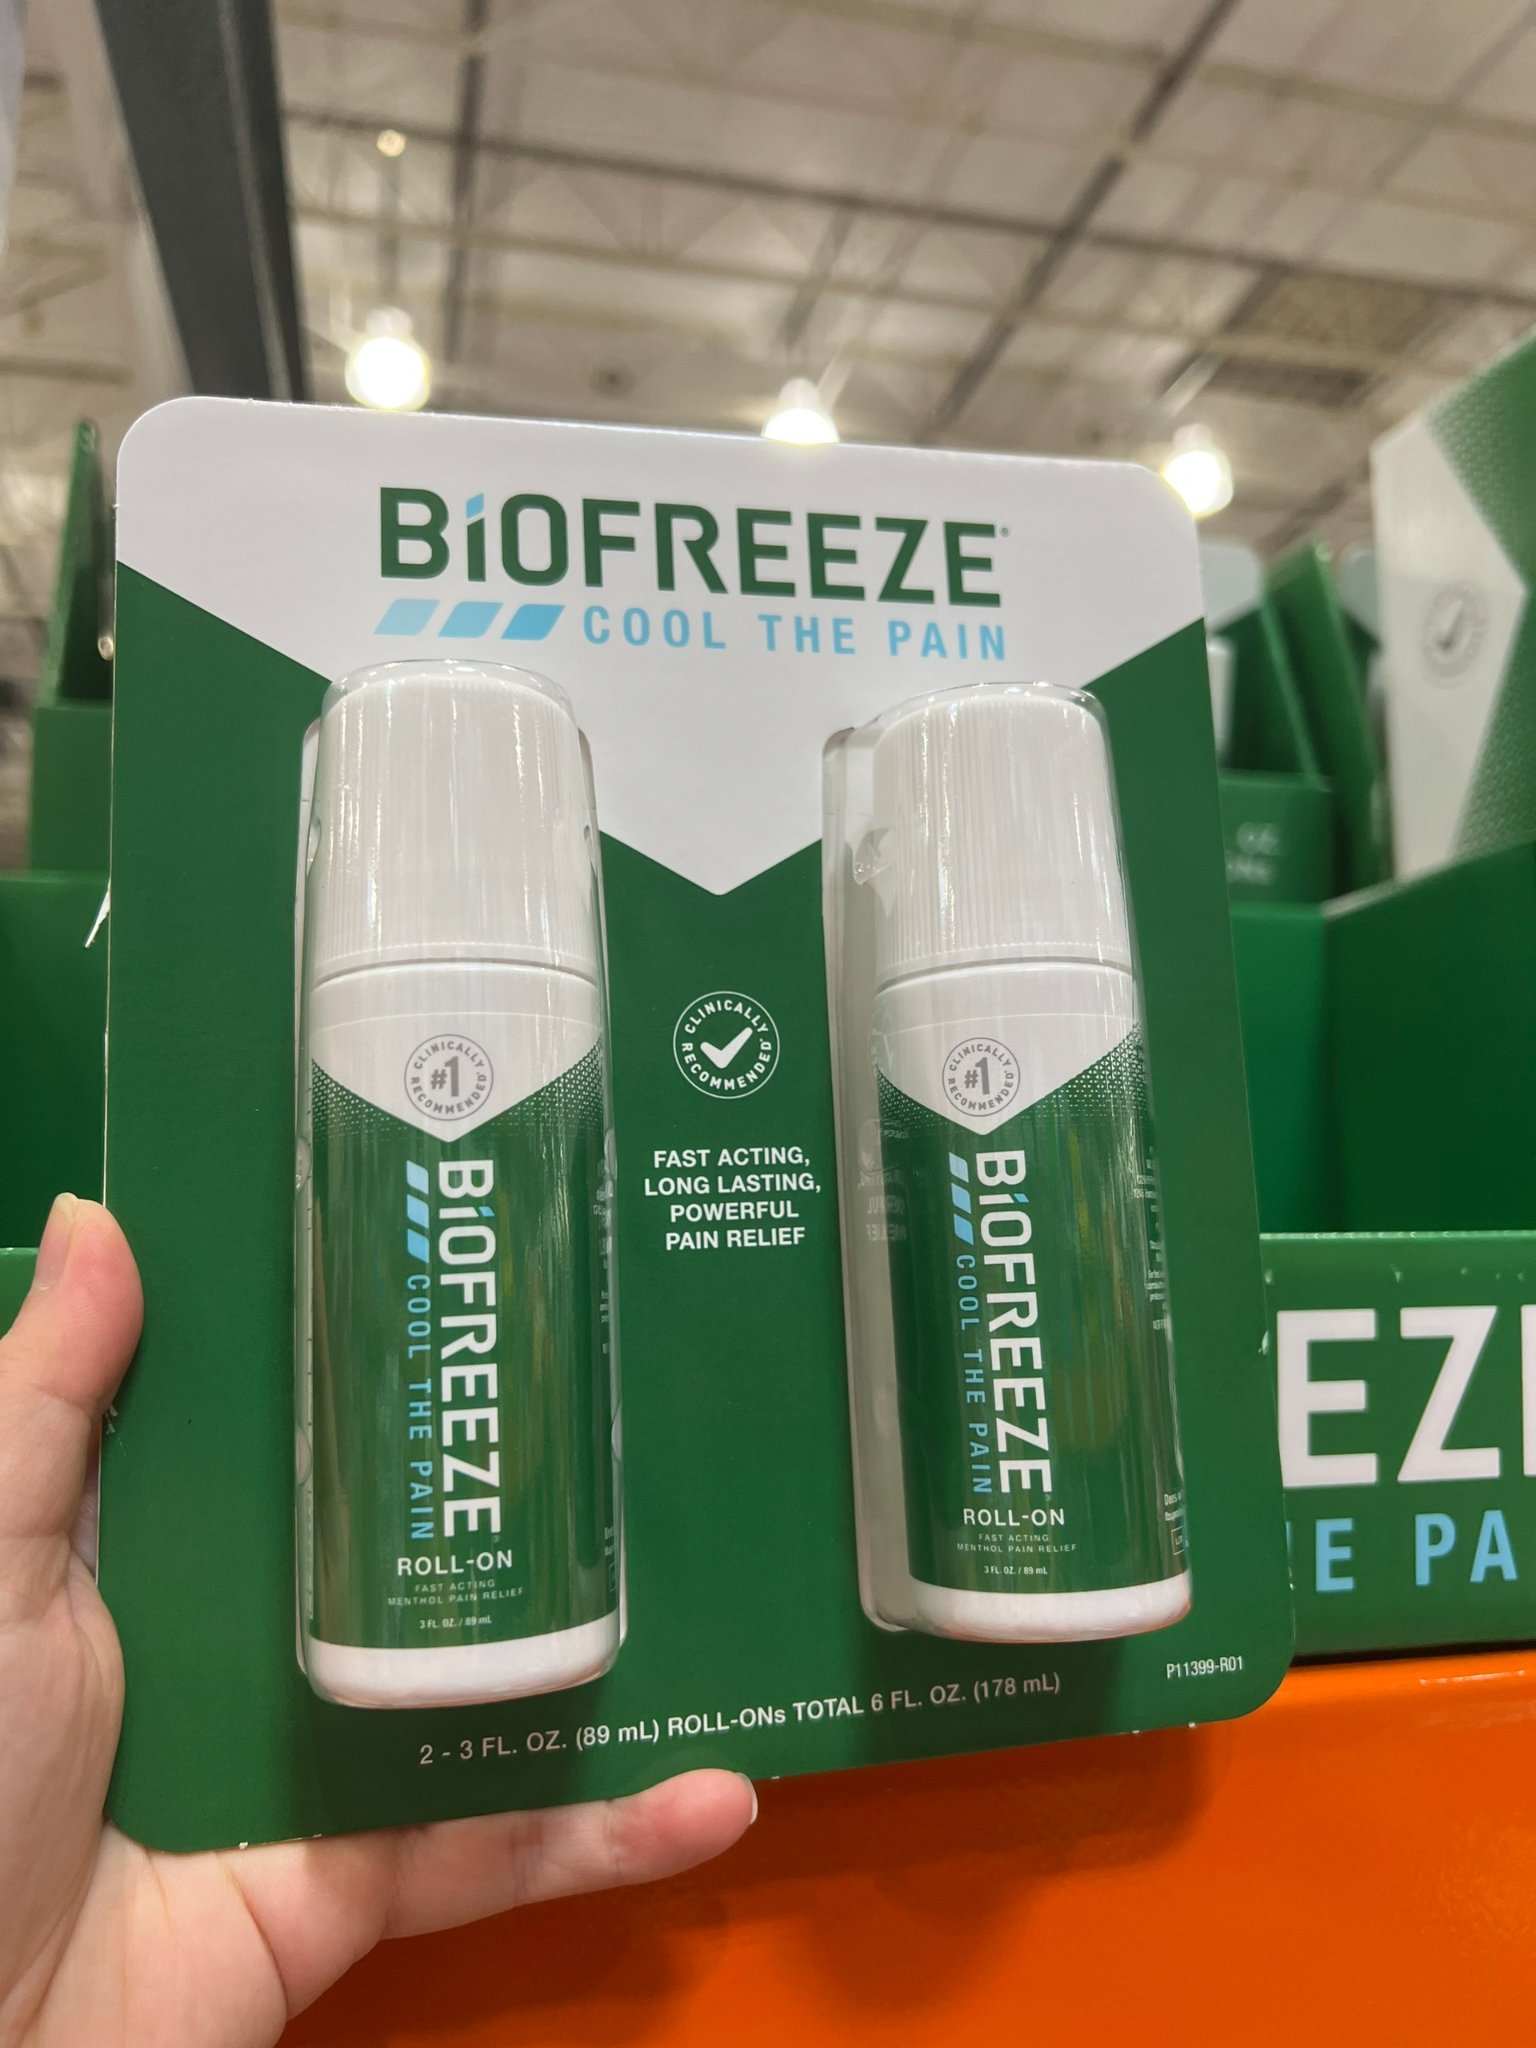 Dầu lạnh xoa bóp giảm đau nhức Biofreeze Cool The Pain của Mỹ